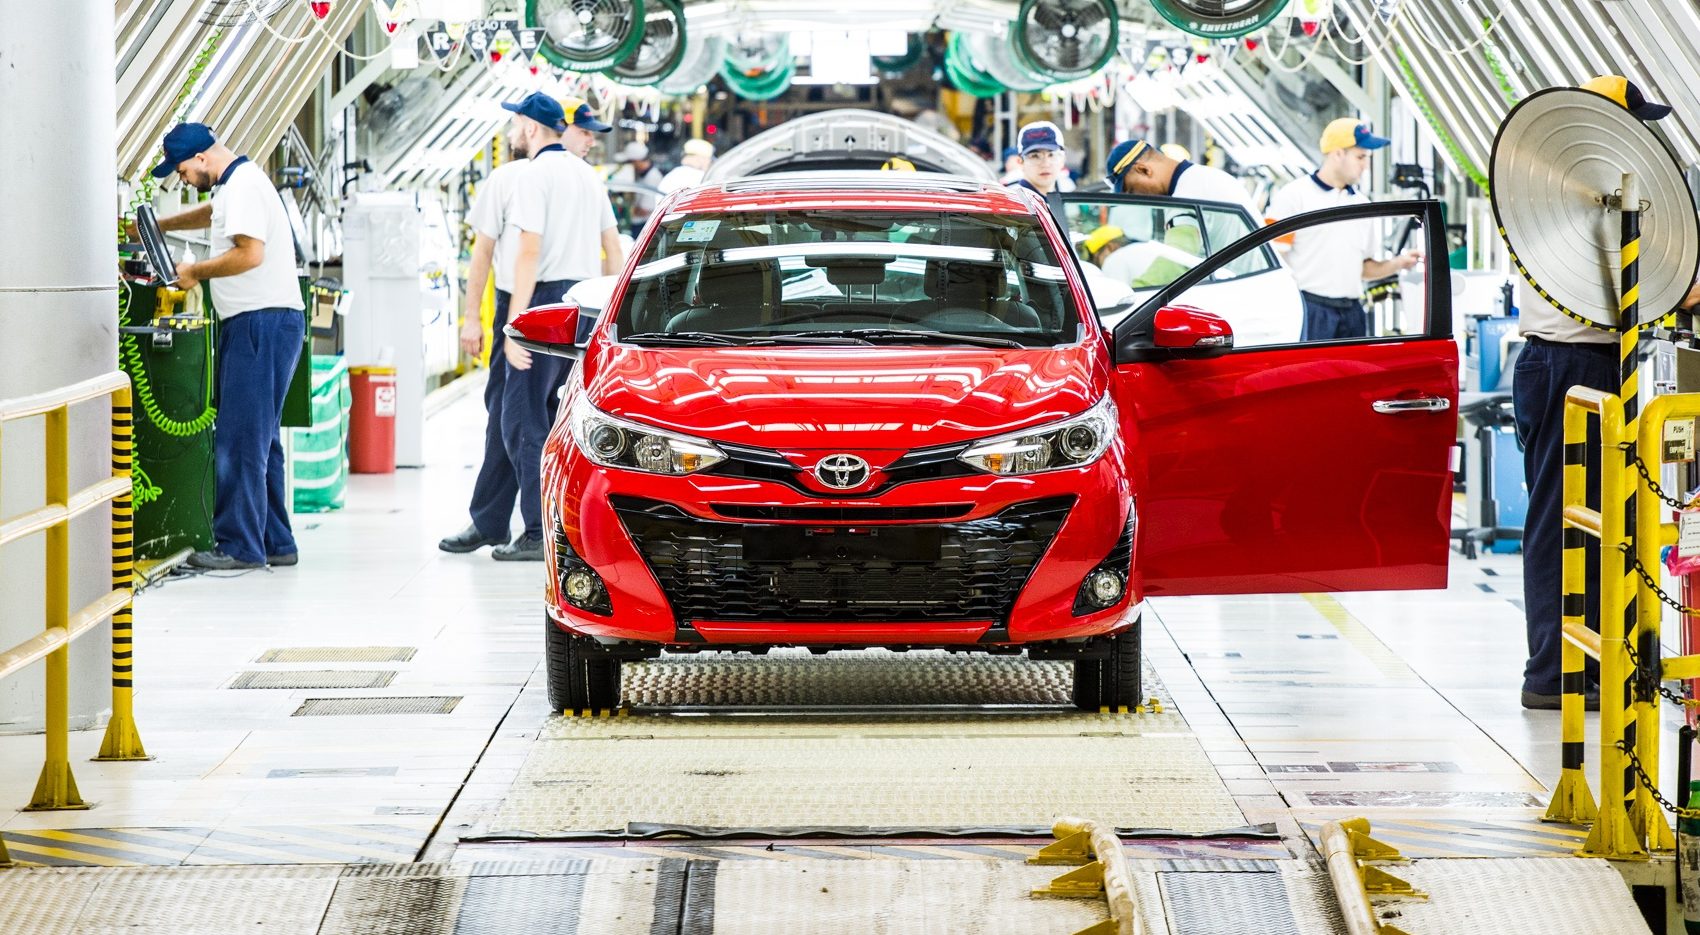 Toyota adia retomada da produção nas fábricas brasileiras